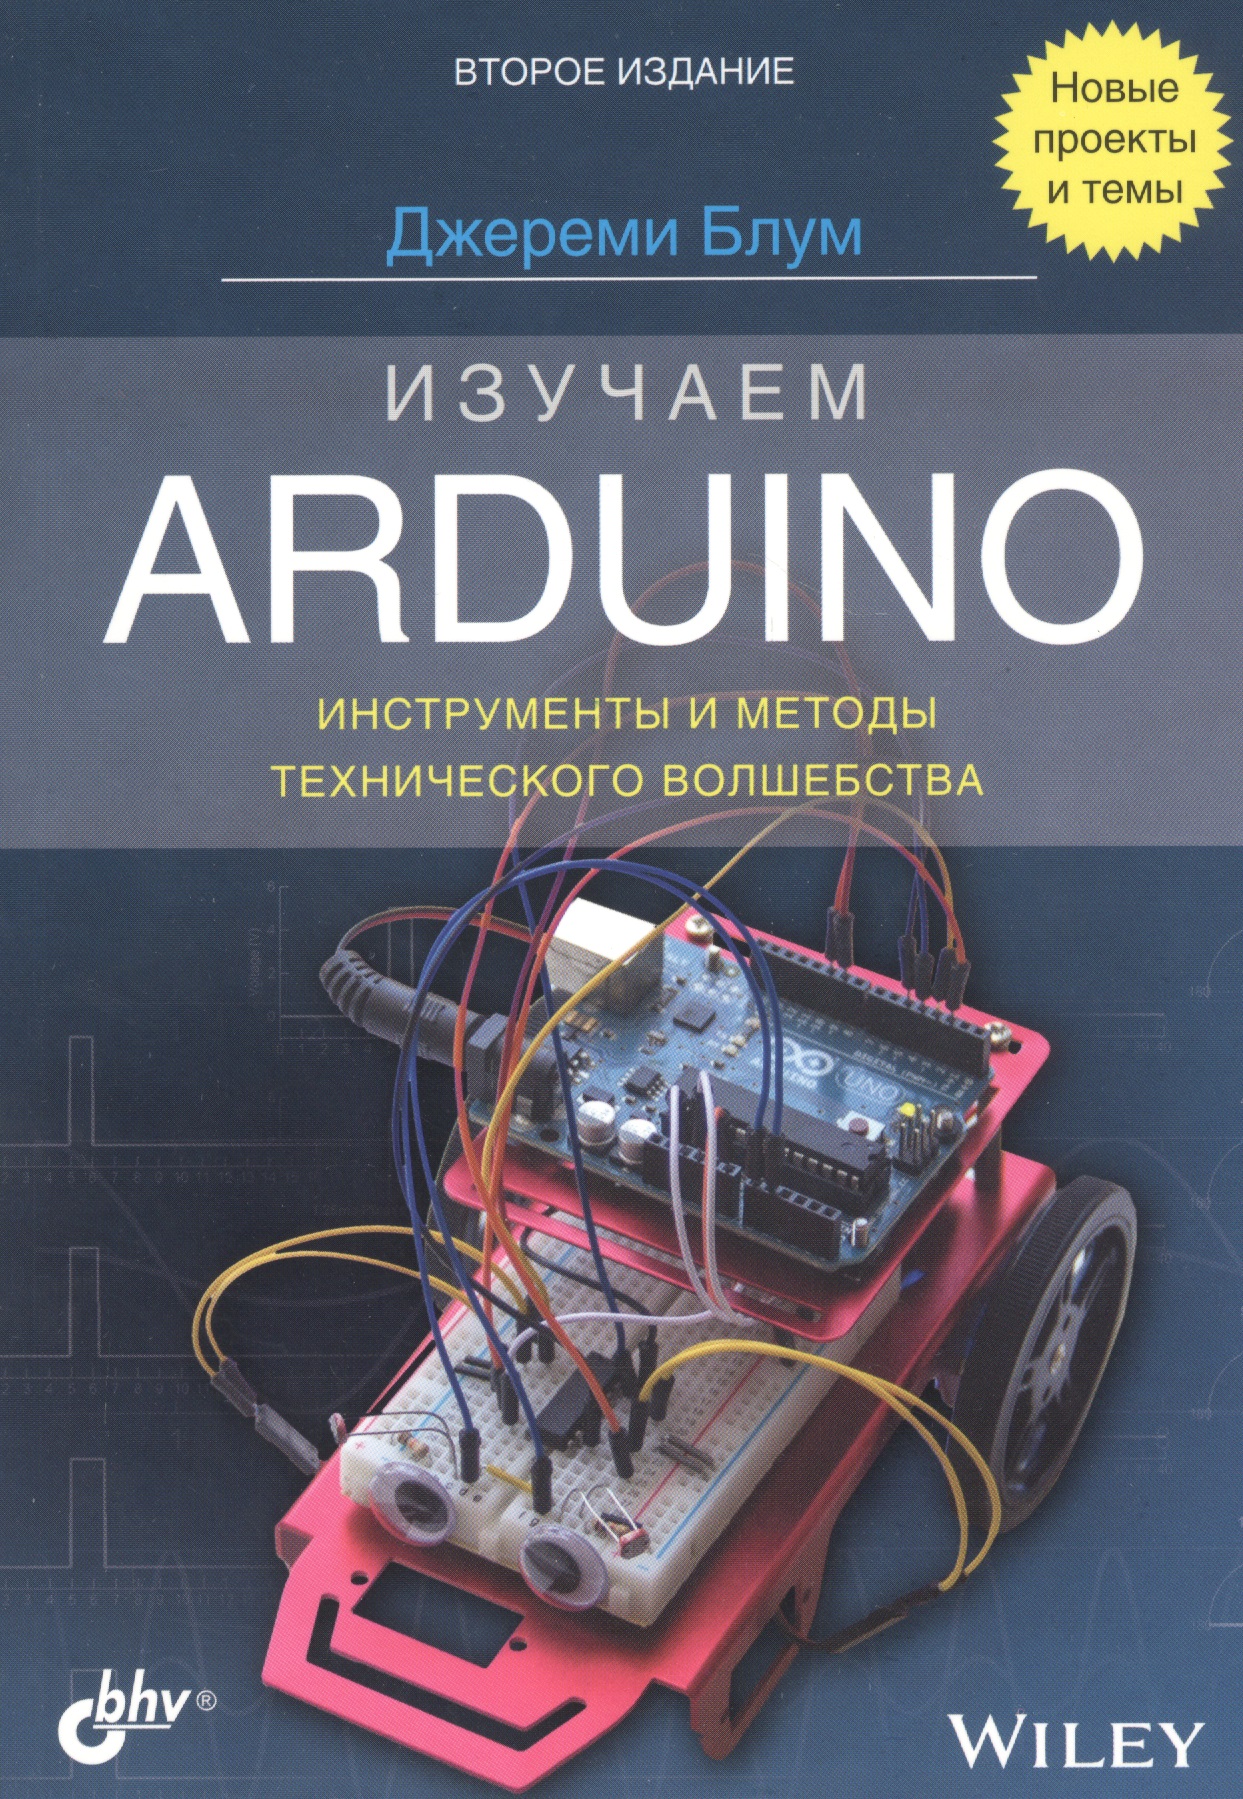 Изучаем Arduino: инструменты и методы технического волшебства глебов и методы технического творчества